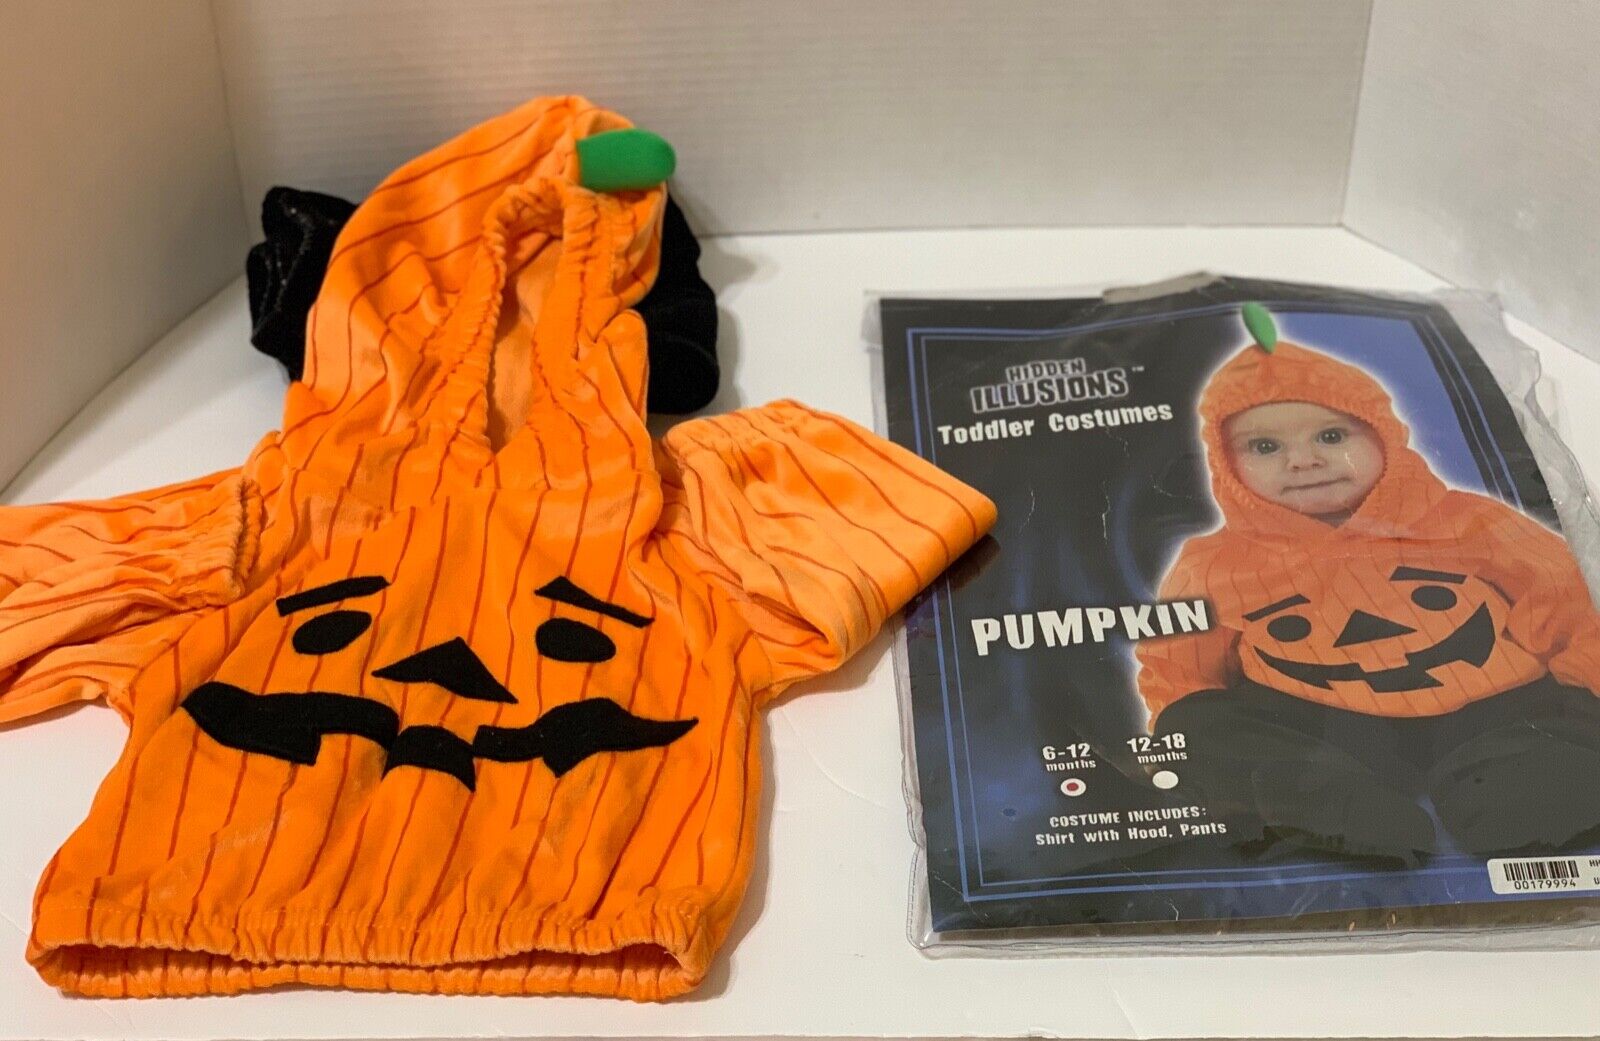 Hidden Illusions Pumpkin Costume Child Size 6-12 Months Halloween Orange Hoodie